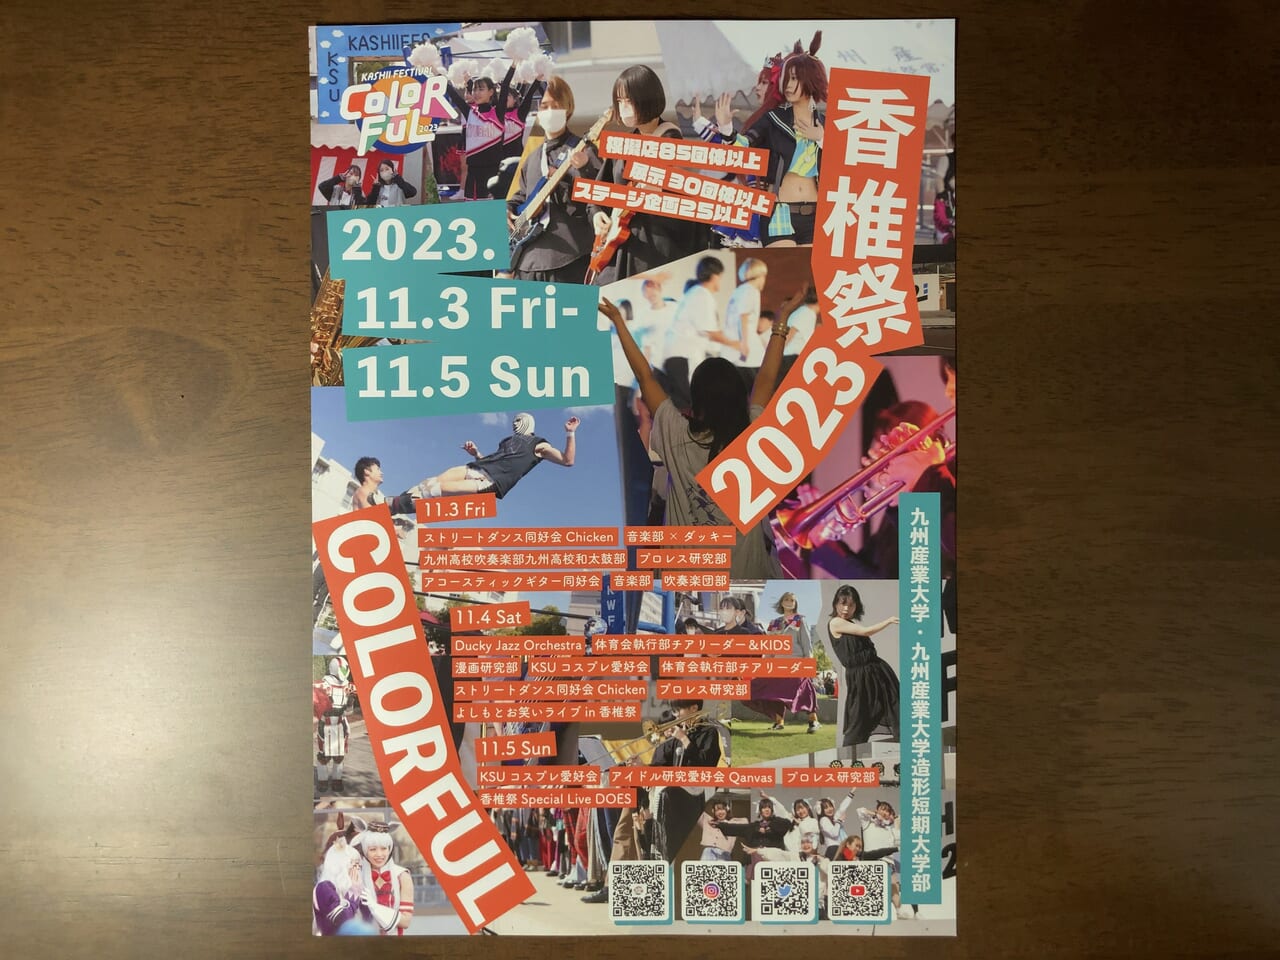 2023年11月3日(金)～11月5日(日)に、九州産業大学・九州産業大学造形短期大学部にて「香椎祭 2023」が開催予定です。